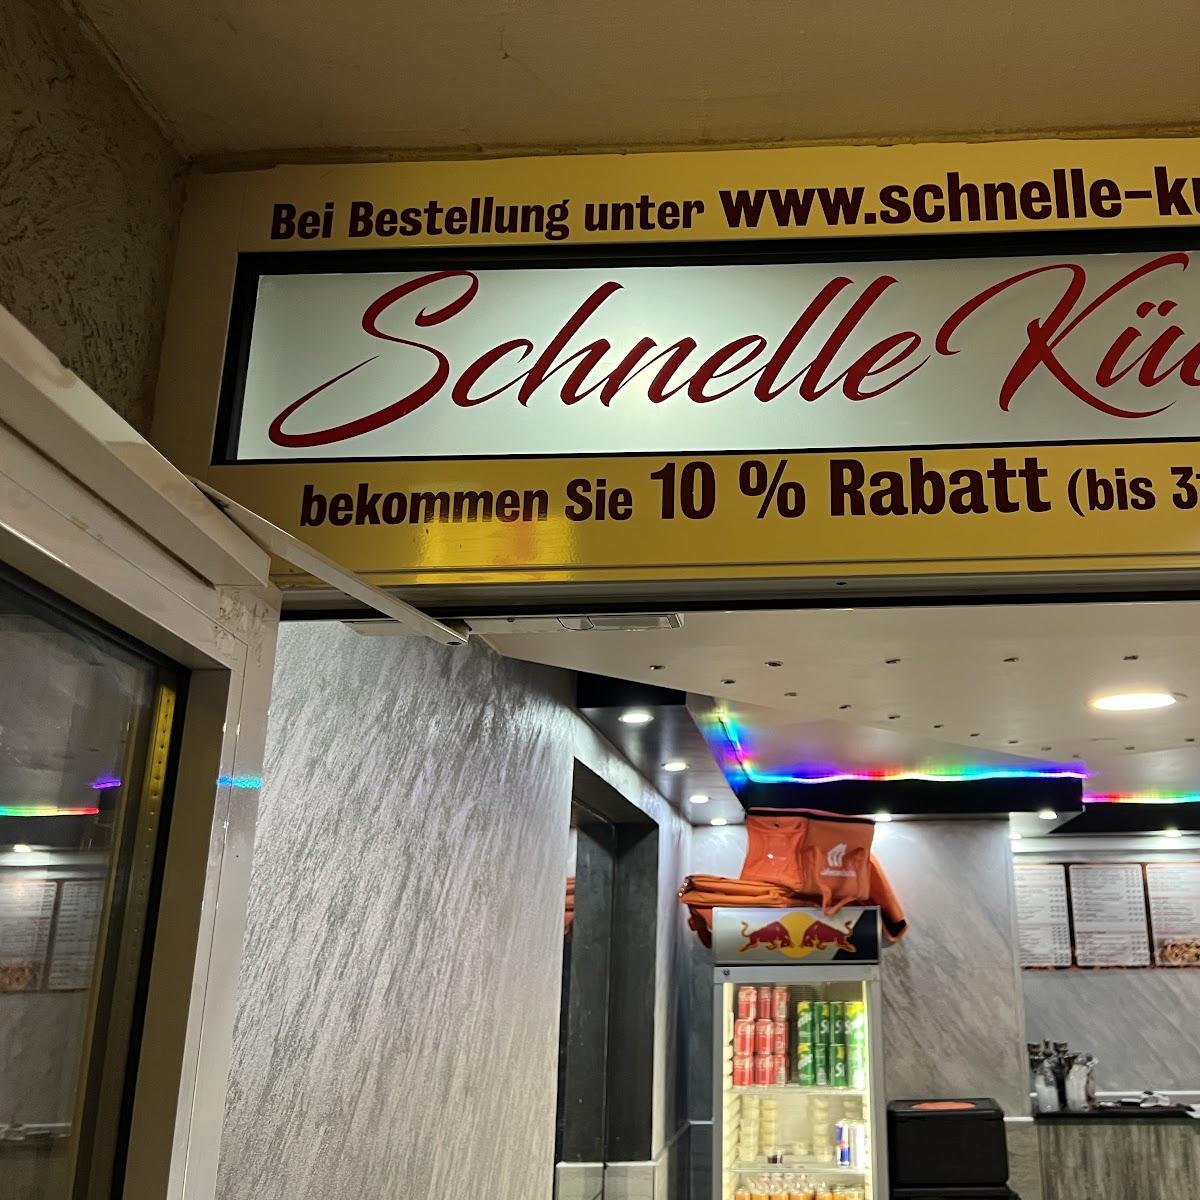 Restaurant "Schnelle Küche" in Hannover